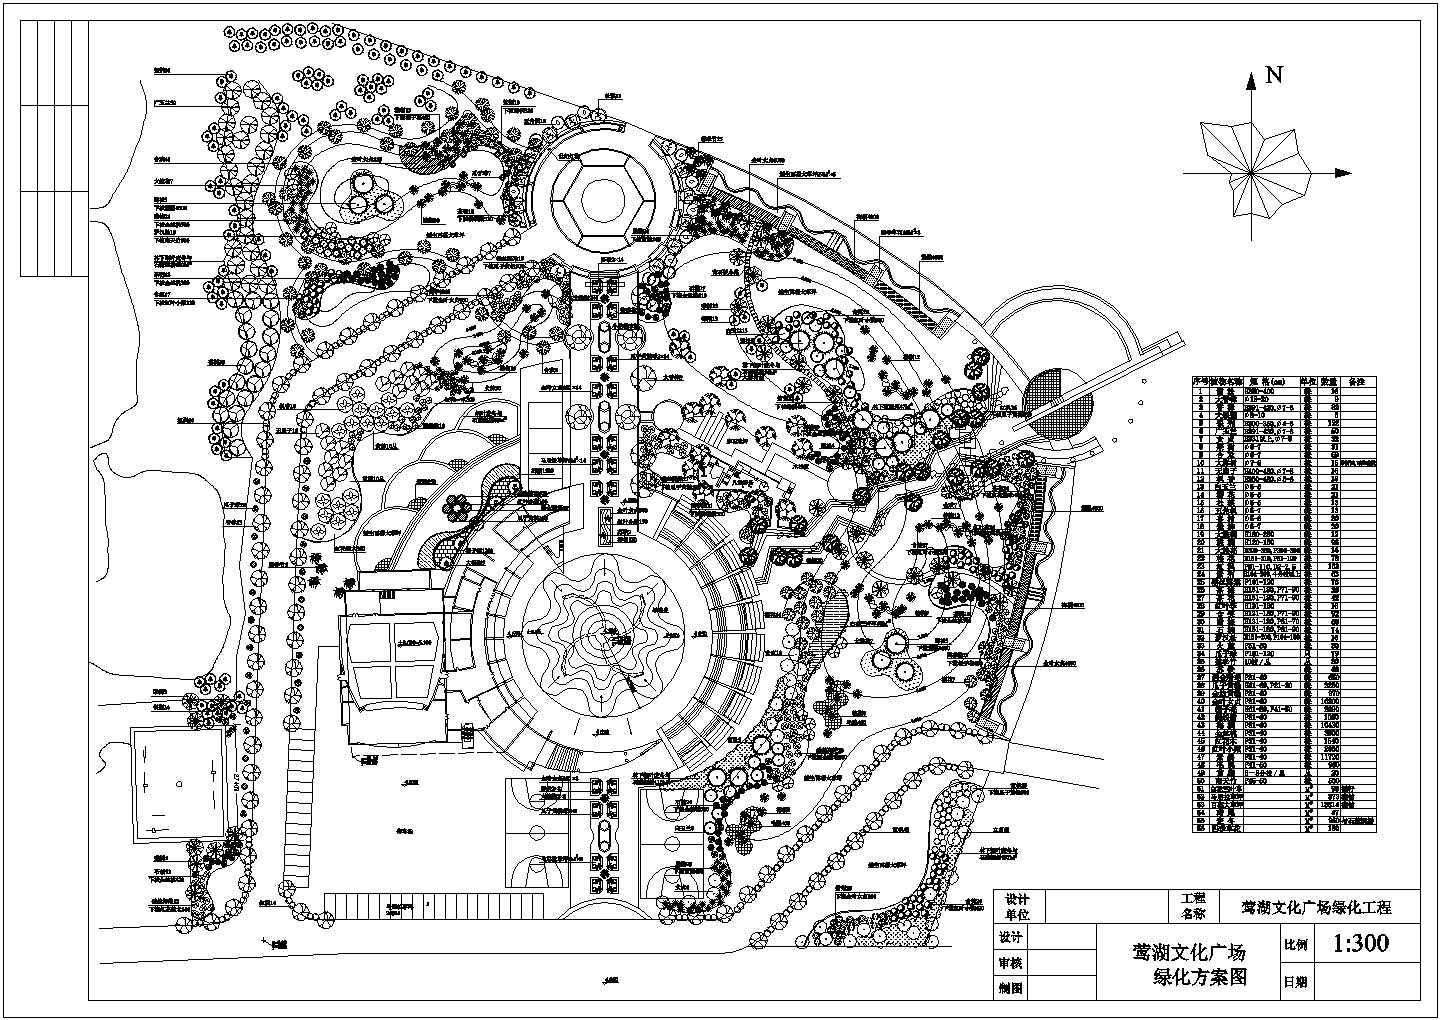 文化广场绿化工程-绿化方案图